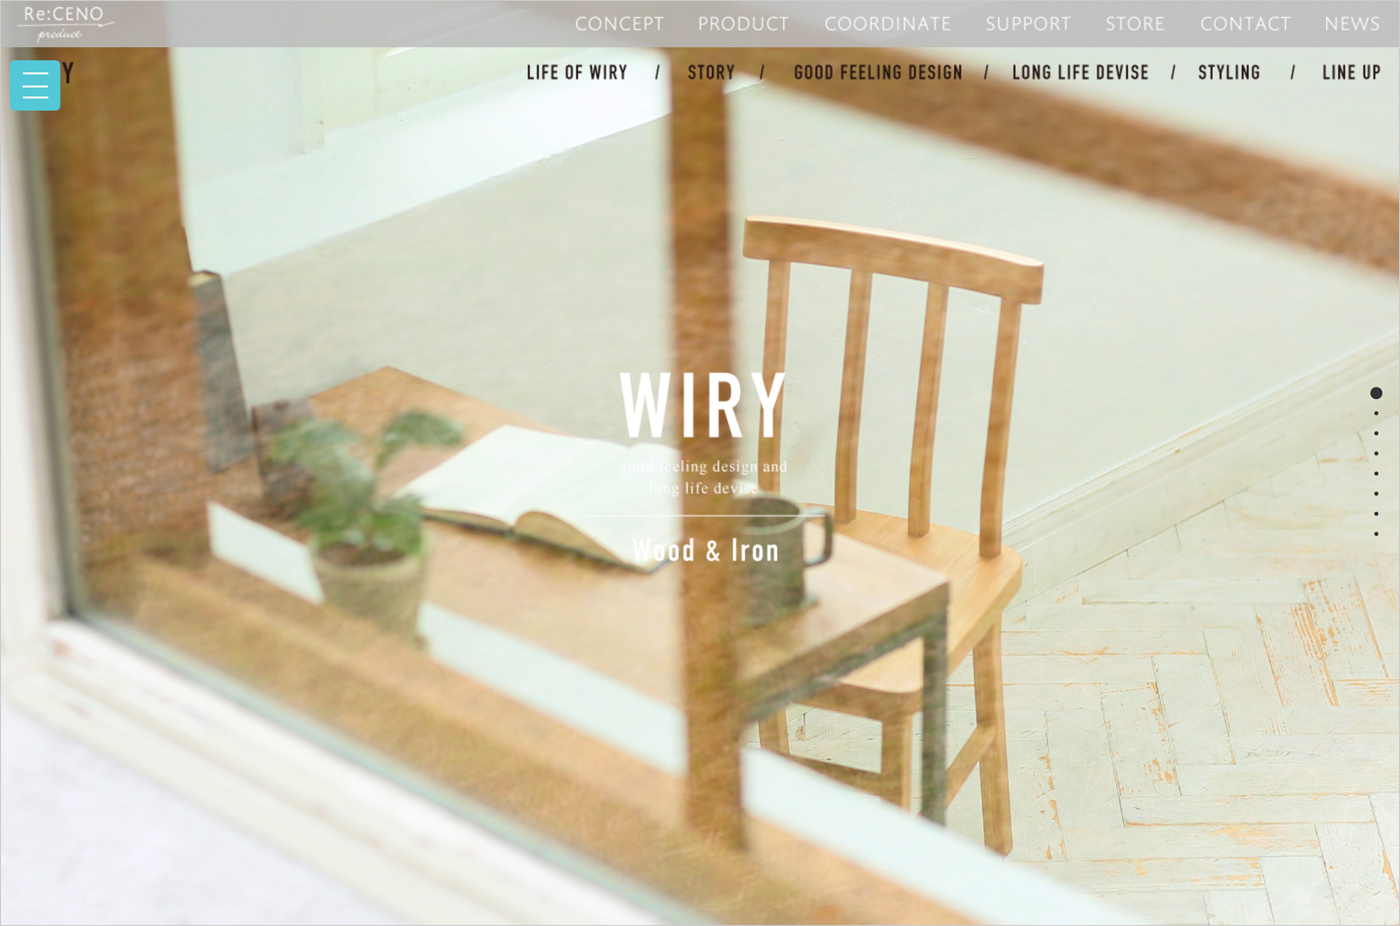 WIRY｜Re:CENO productウェブサイトの画面キャプチャ画像